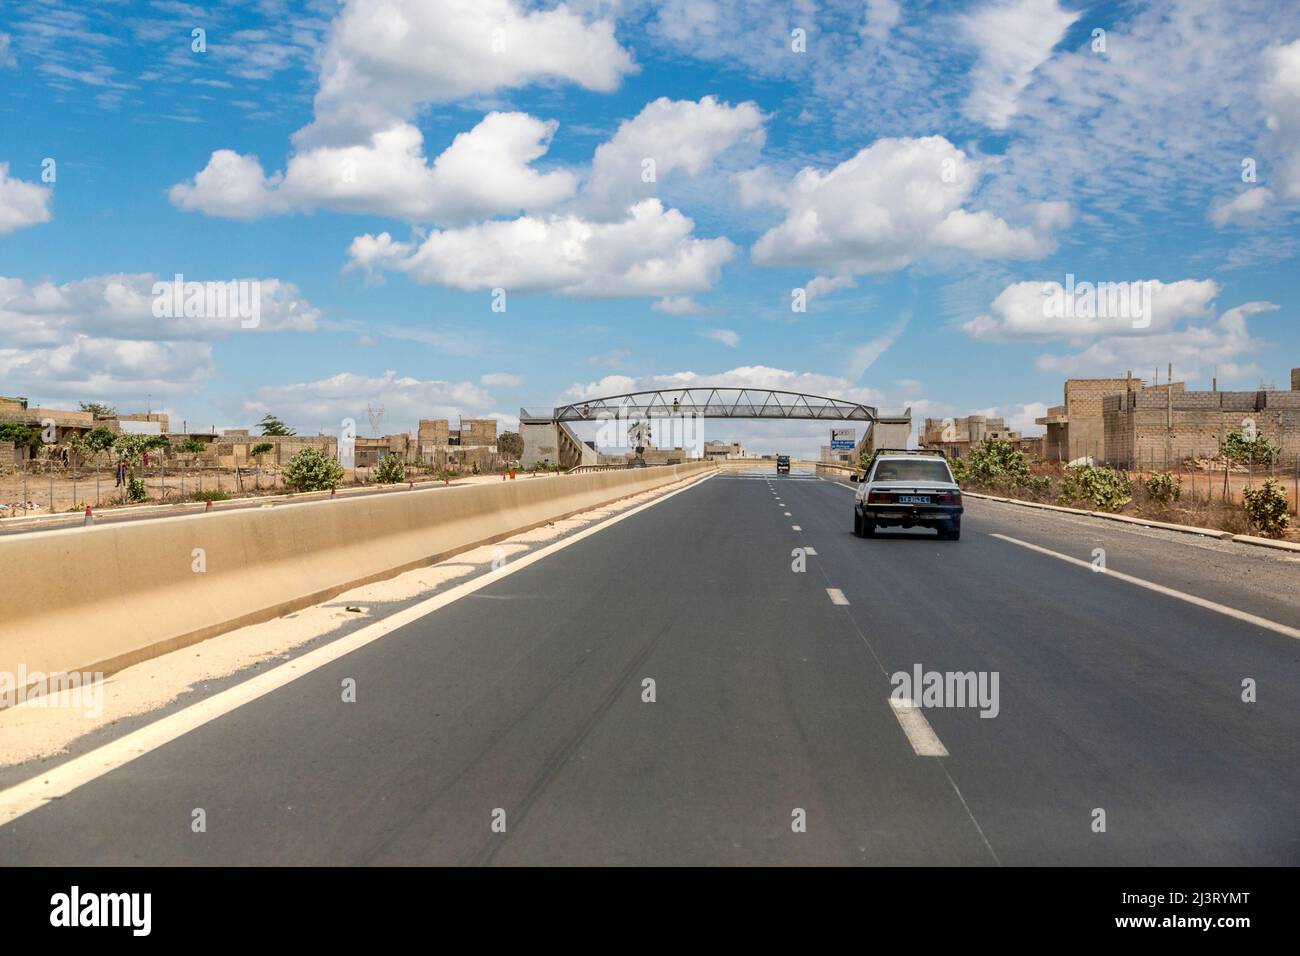 Autoroute moderne divisée à quatre voies près de Dakar, Sénégal. Pont piéton à distance. Banque D'Images